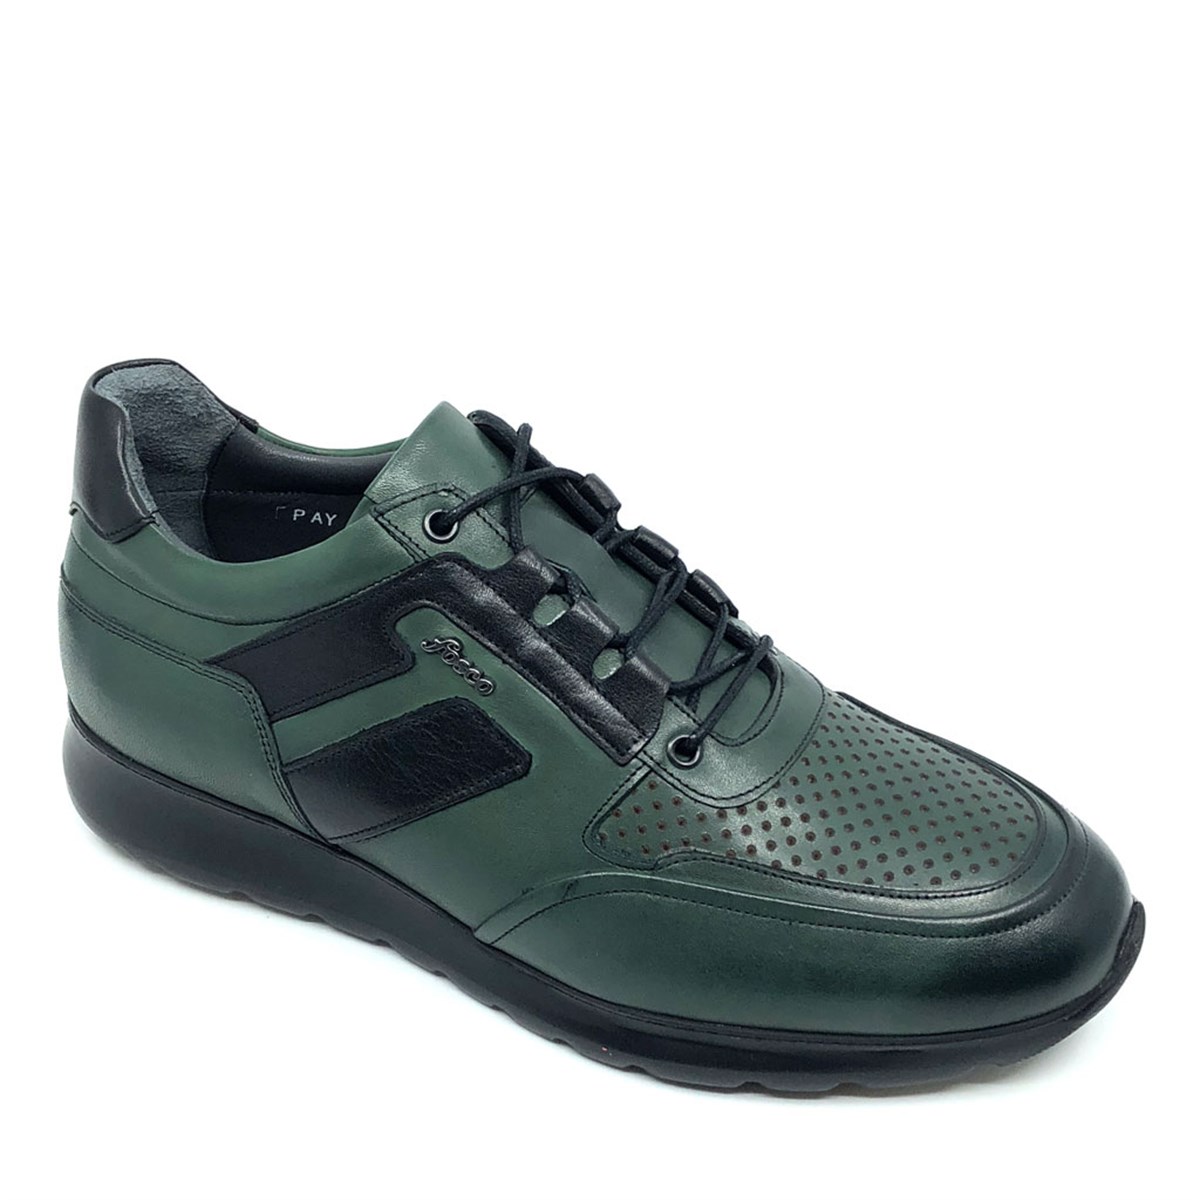 Sneakers Erkek Hakiki Deri haki-yeşil Günlük Hafif Eva Taban Spor Ayakkabı, Renk: Yeşil, Beden: 41